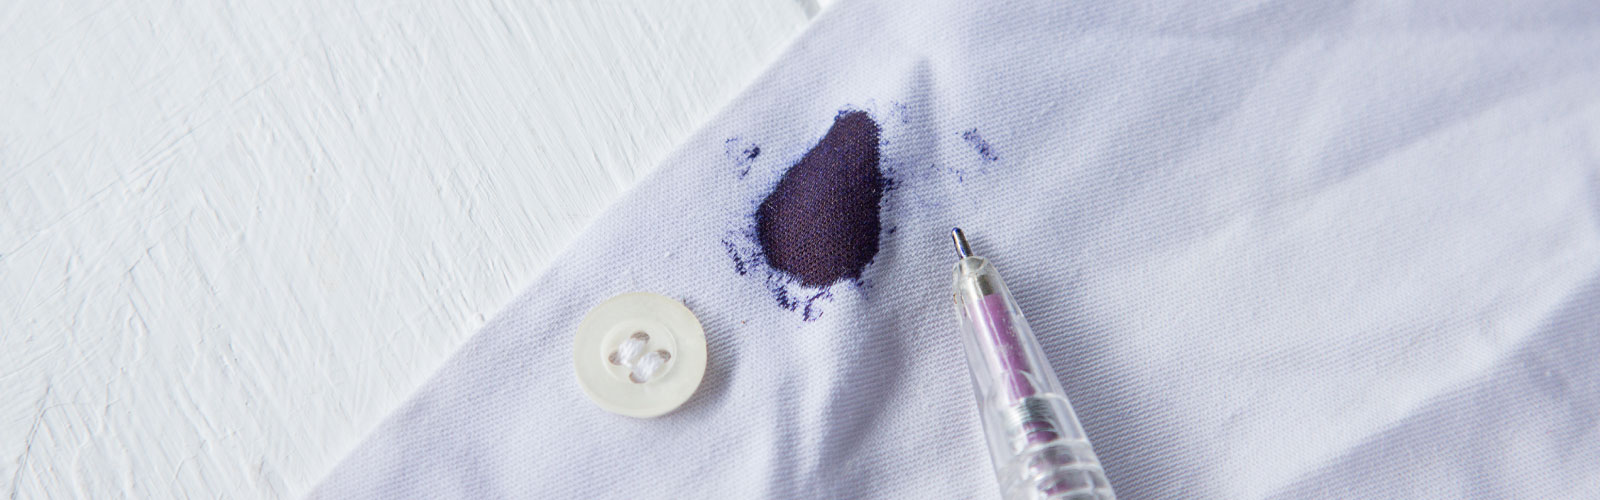 5 formas de manchas tinta en ropa | Homecenter